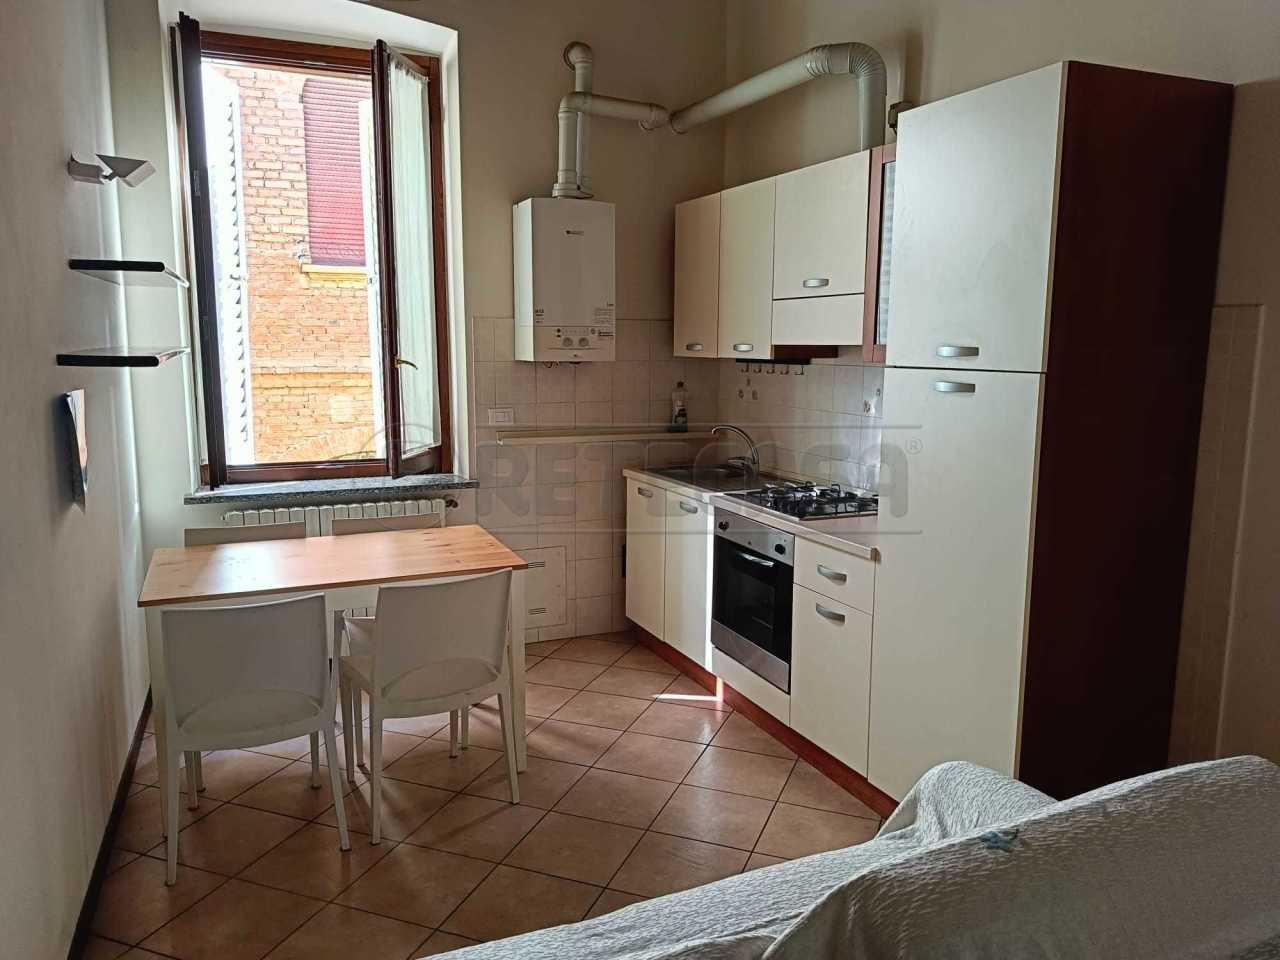 Appartamento in affitto a Crema, 2 locali, prezzo € 500 | PortaleAgenzieImmobiliari.it